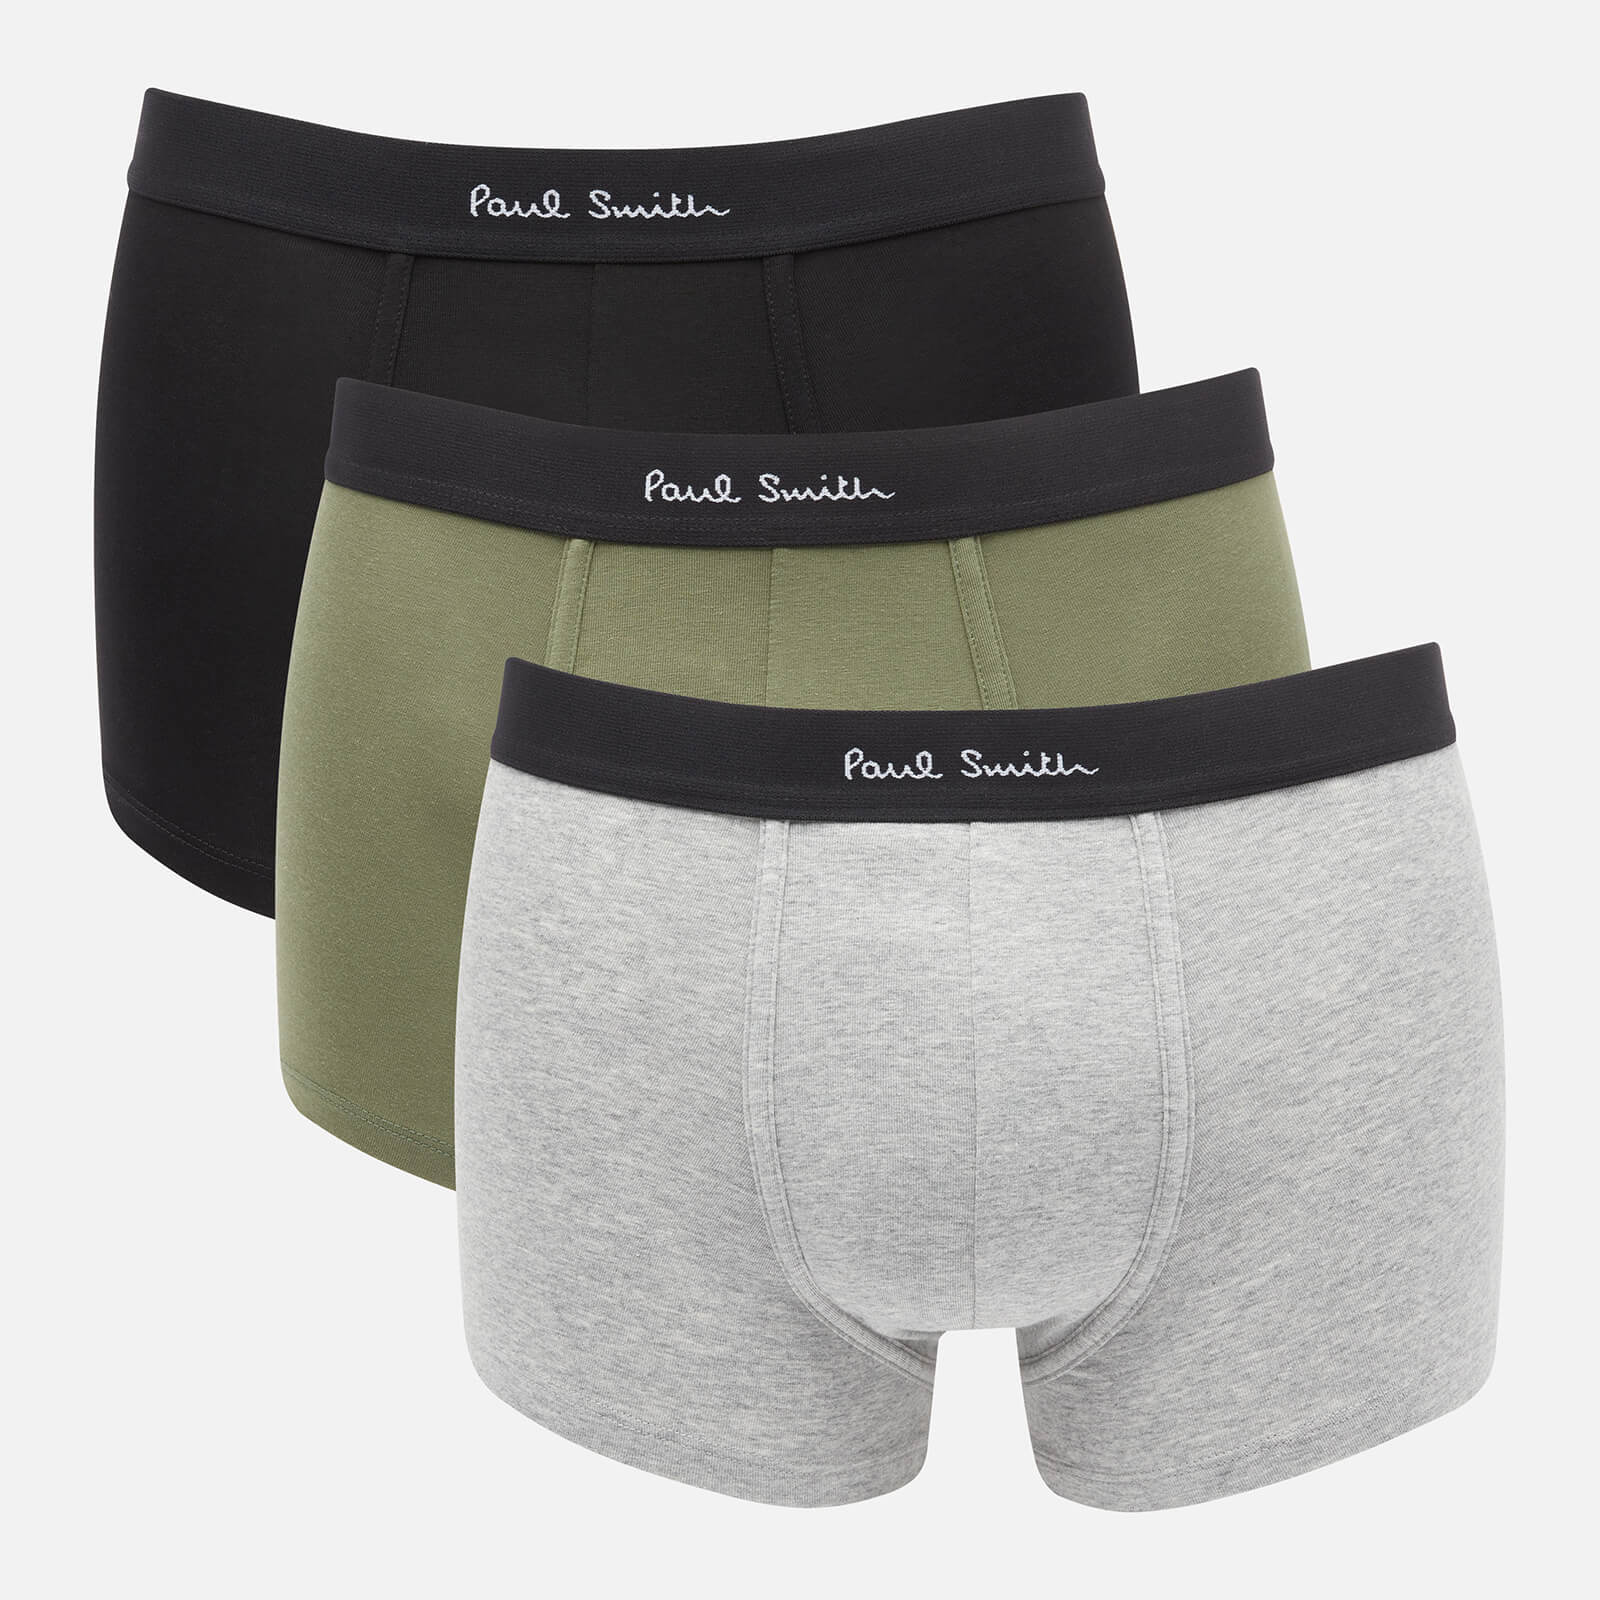 PS Paul Smith Men's 3-Pack Trunks - Black/Khaki/Grey Melange - S